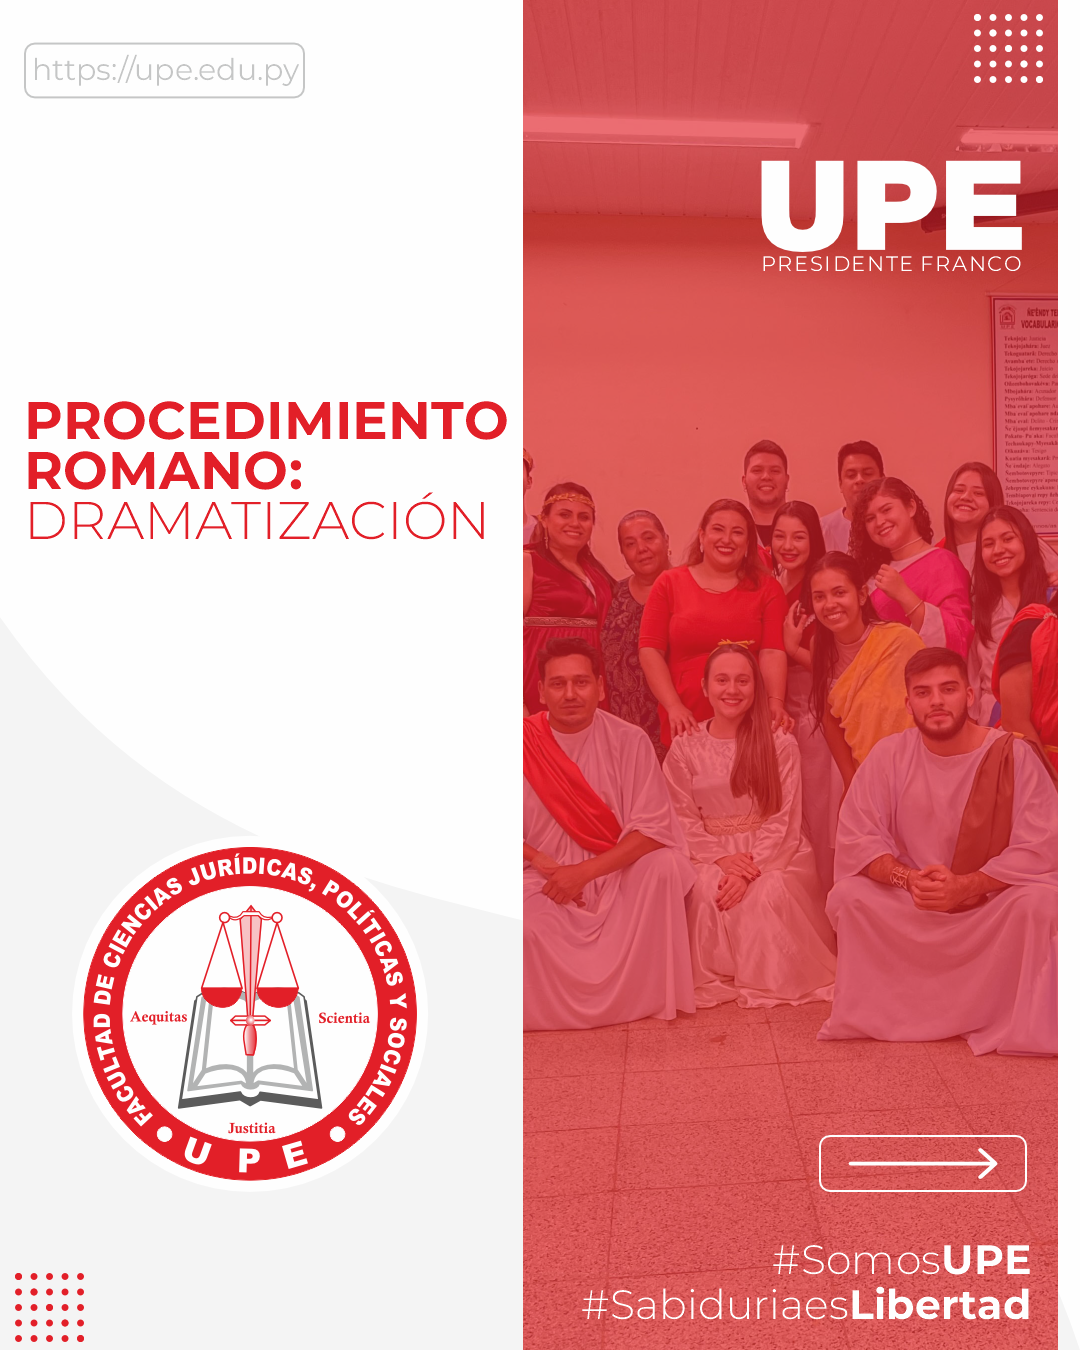 Dramatización del Procedimiento Romano por Estudiantes de Derecho UPE: Un Viaje Jurídico en el Tiempo